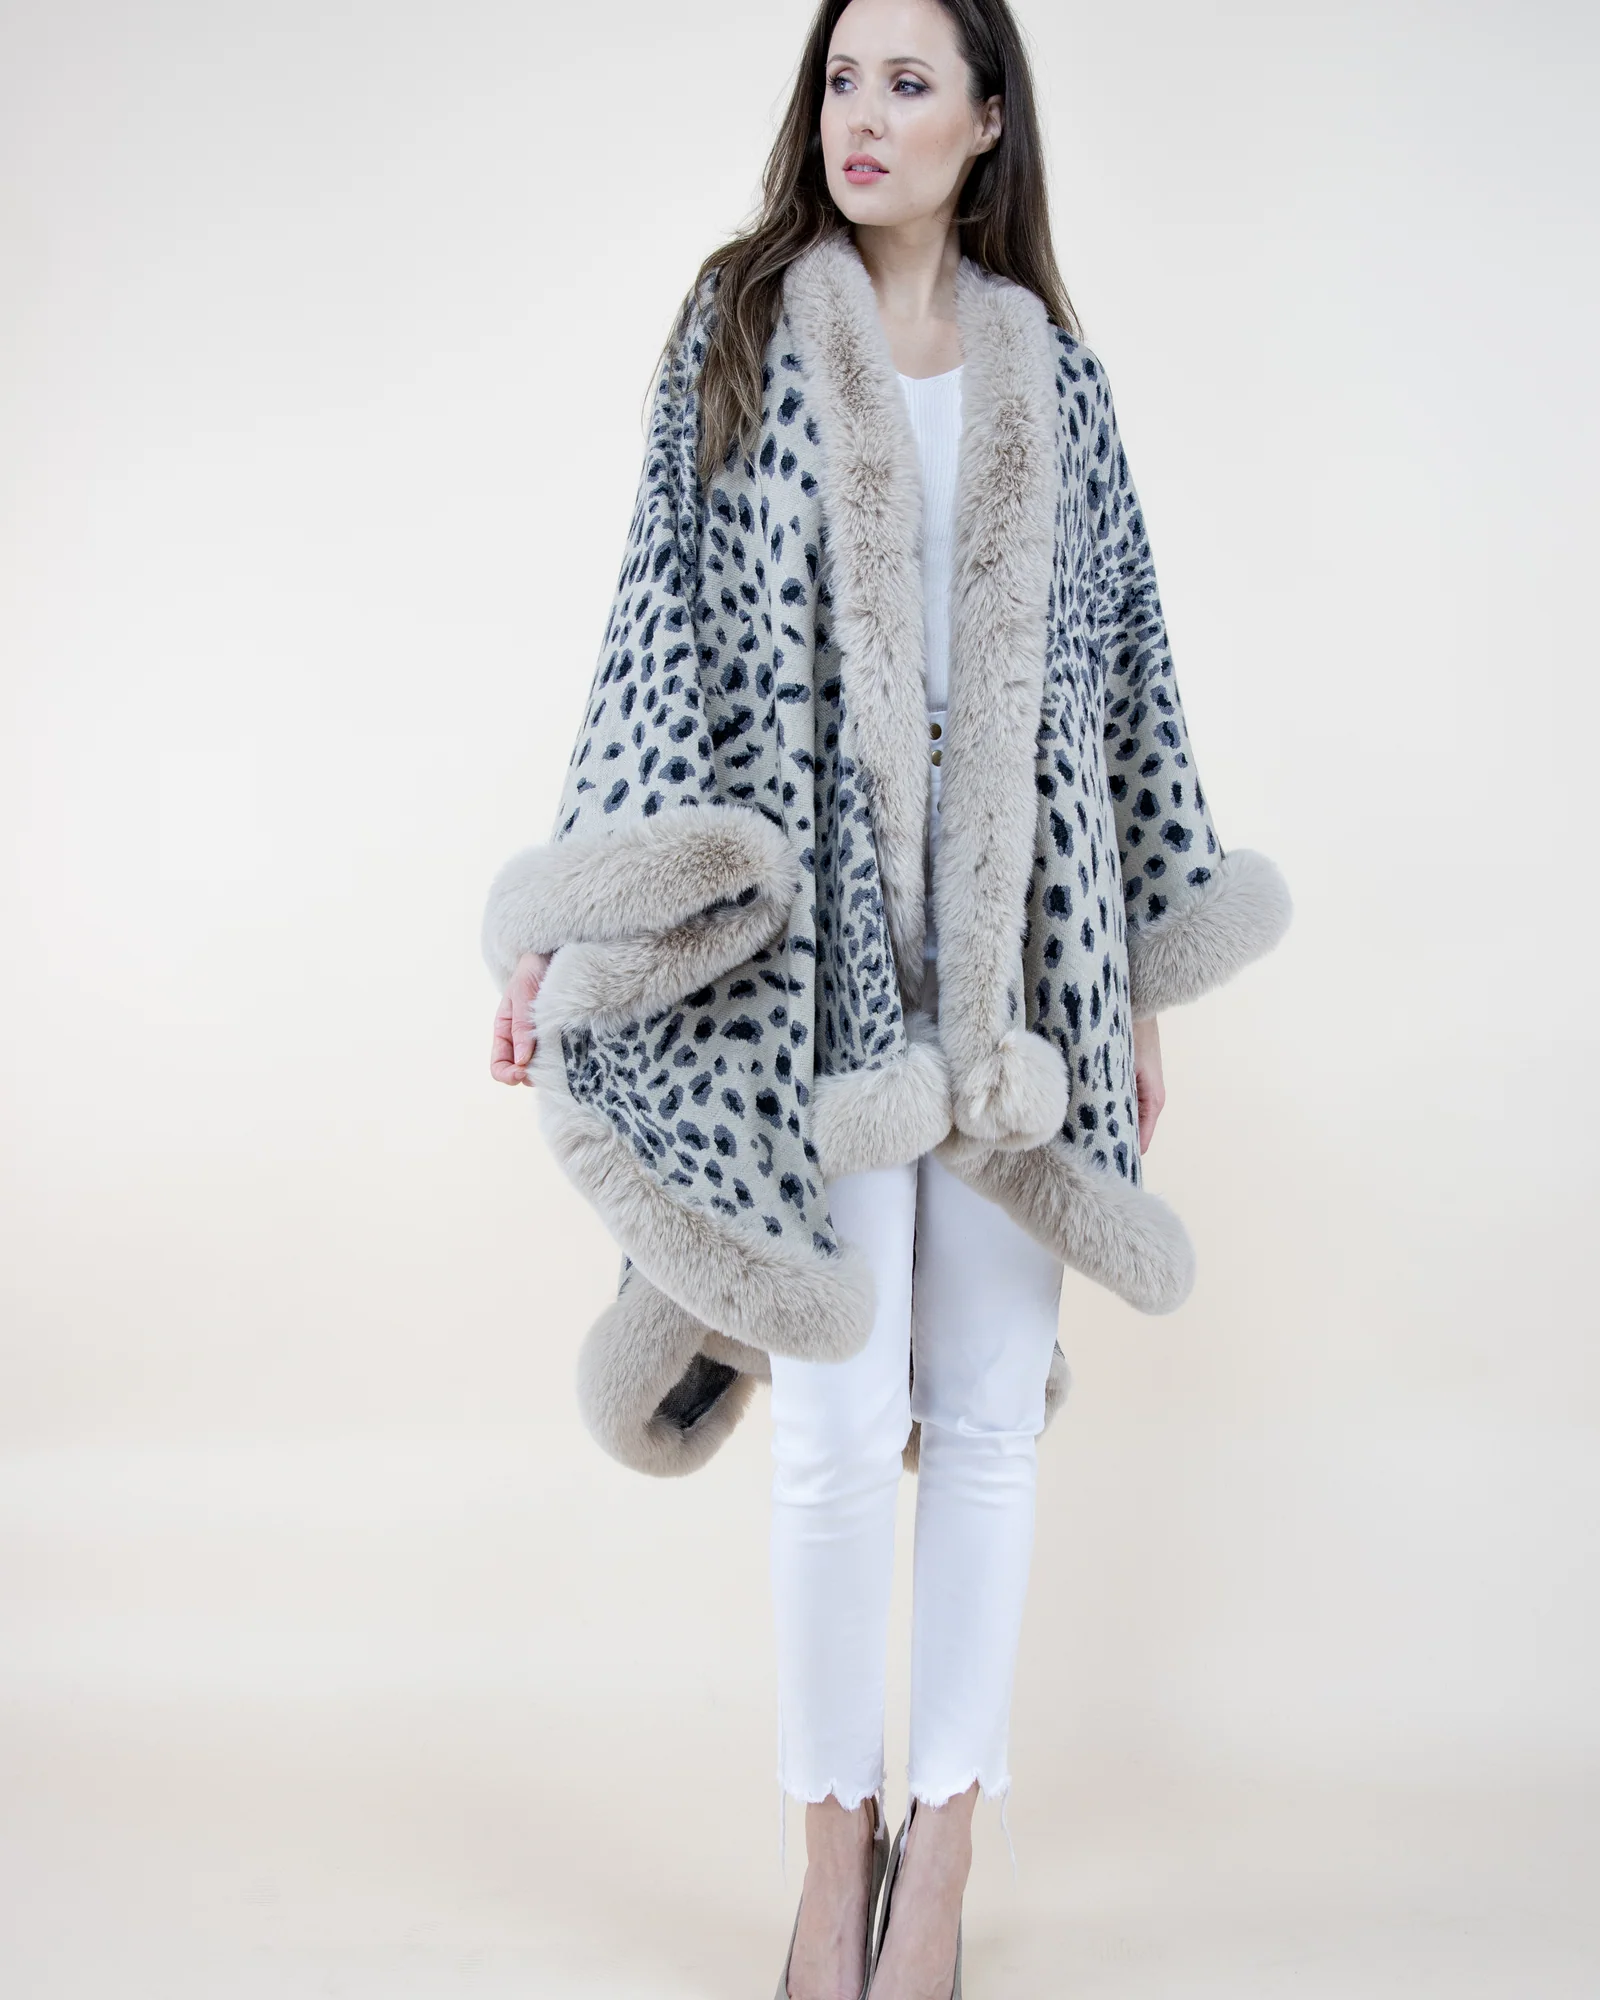 Winter White w/ Black Cheetah Shawl w/ Faux Fur